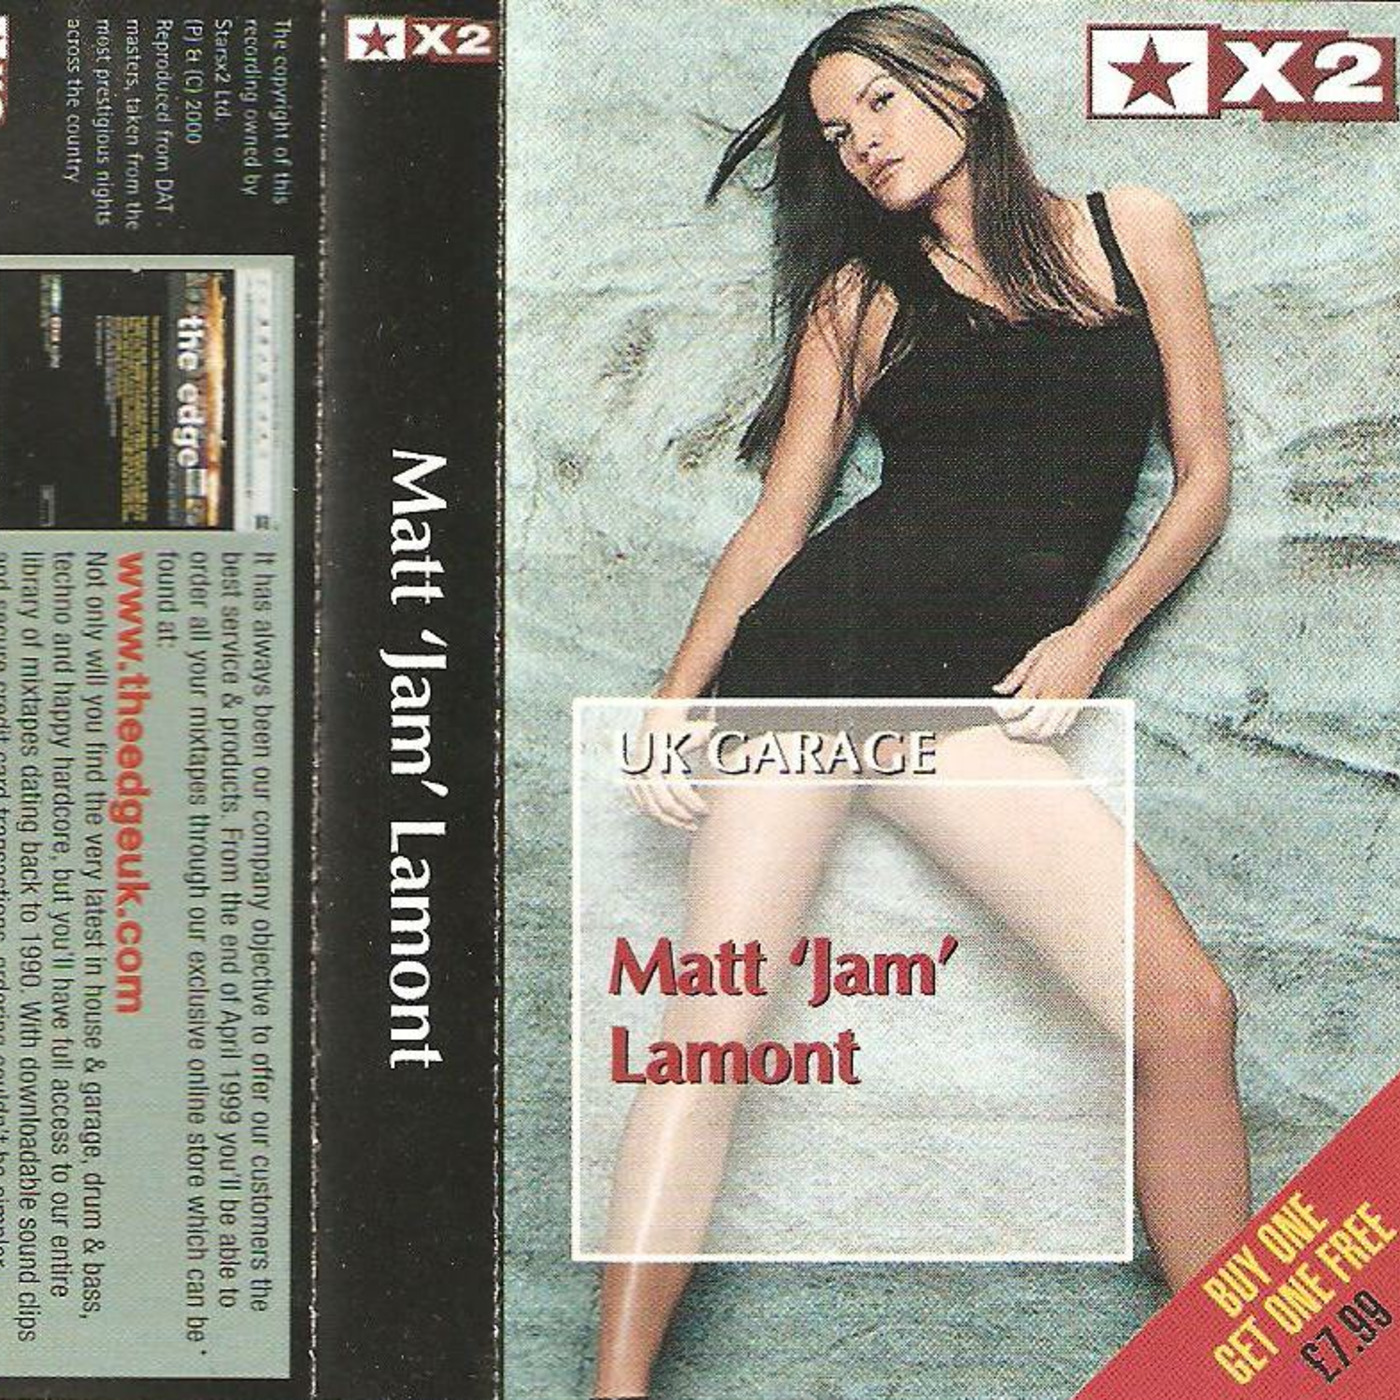 (2000) Matt Jam Lamont - Stars X2 [UK Garage]